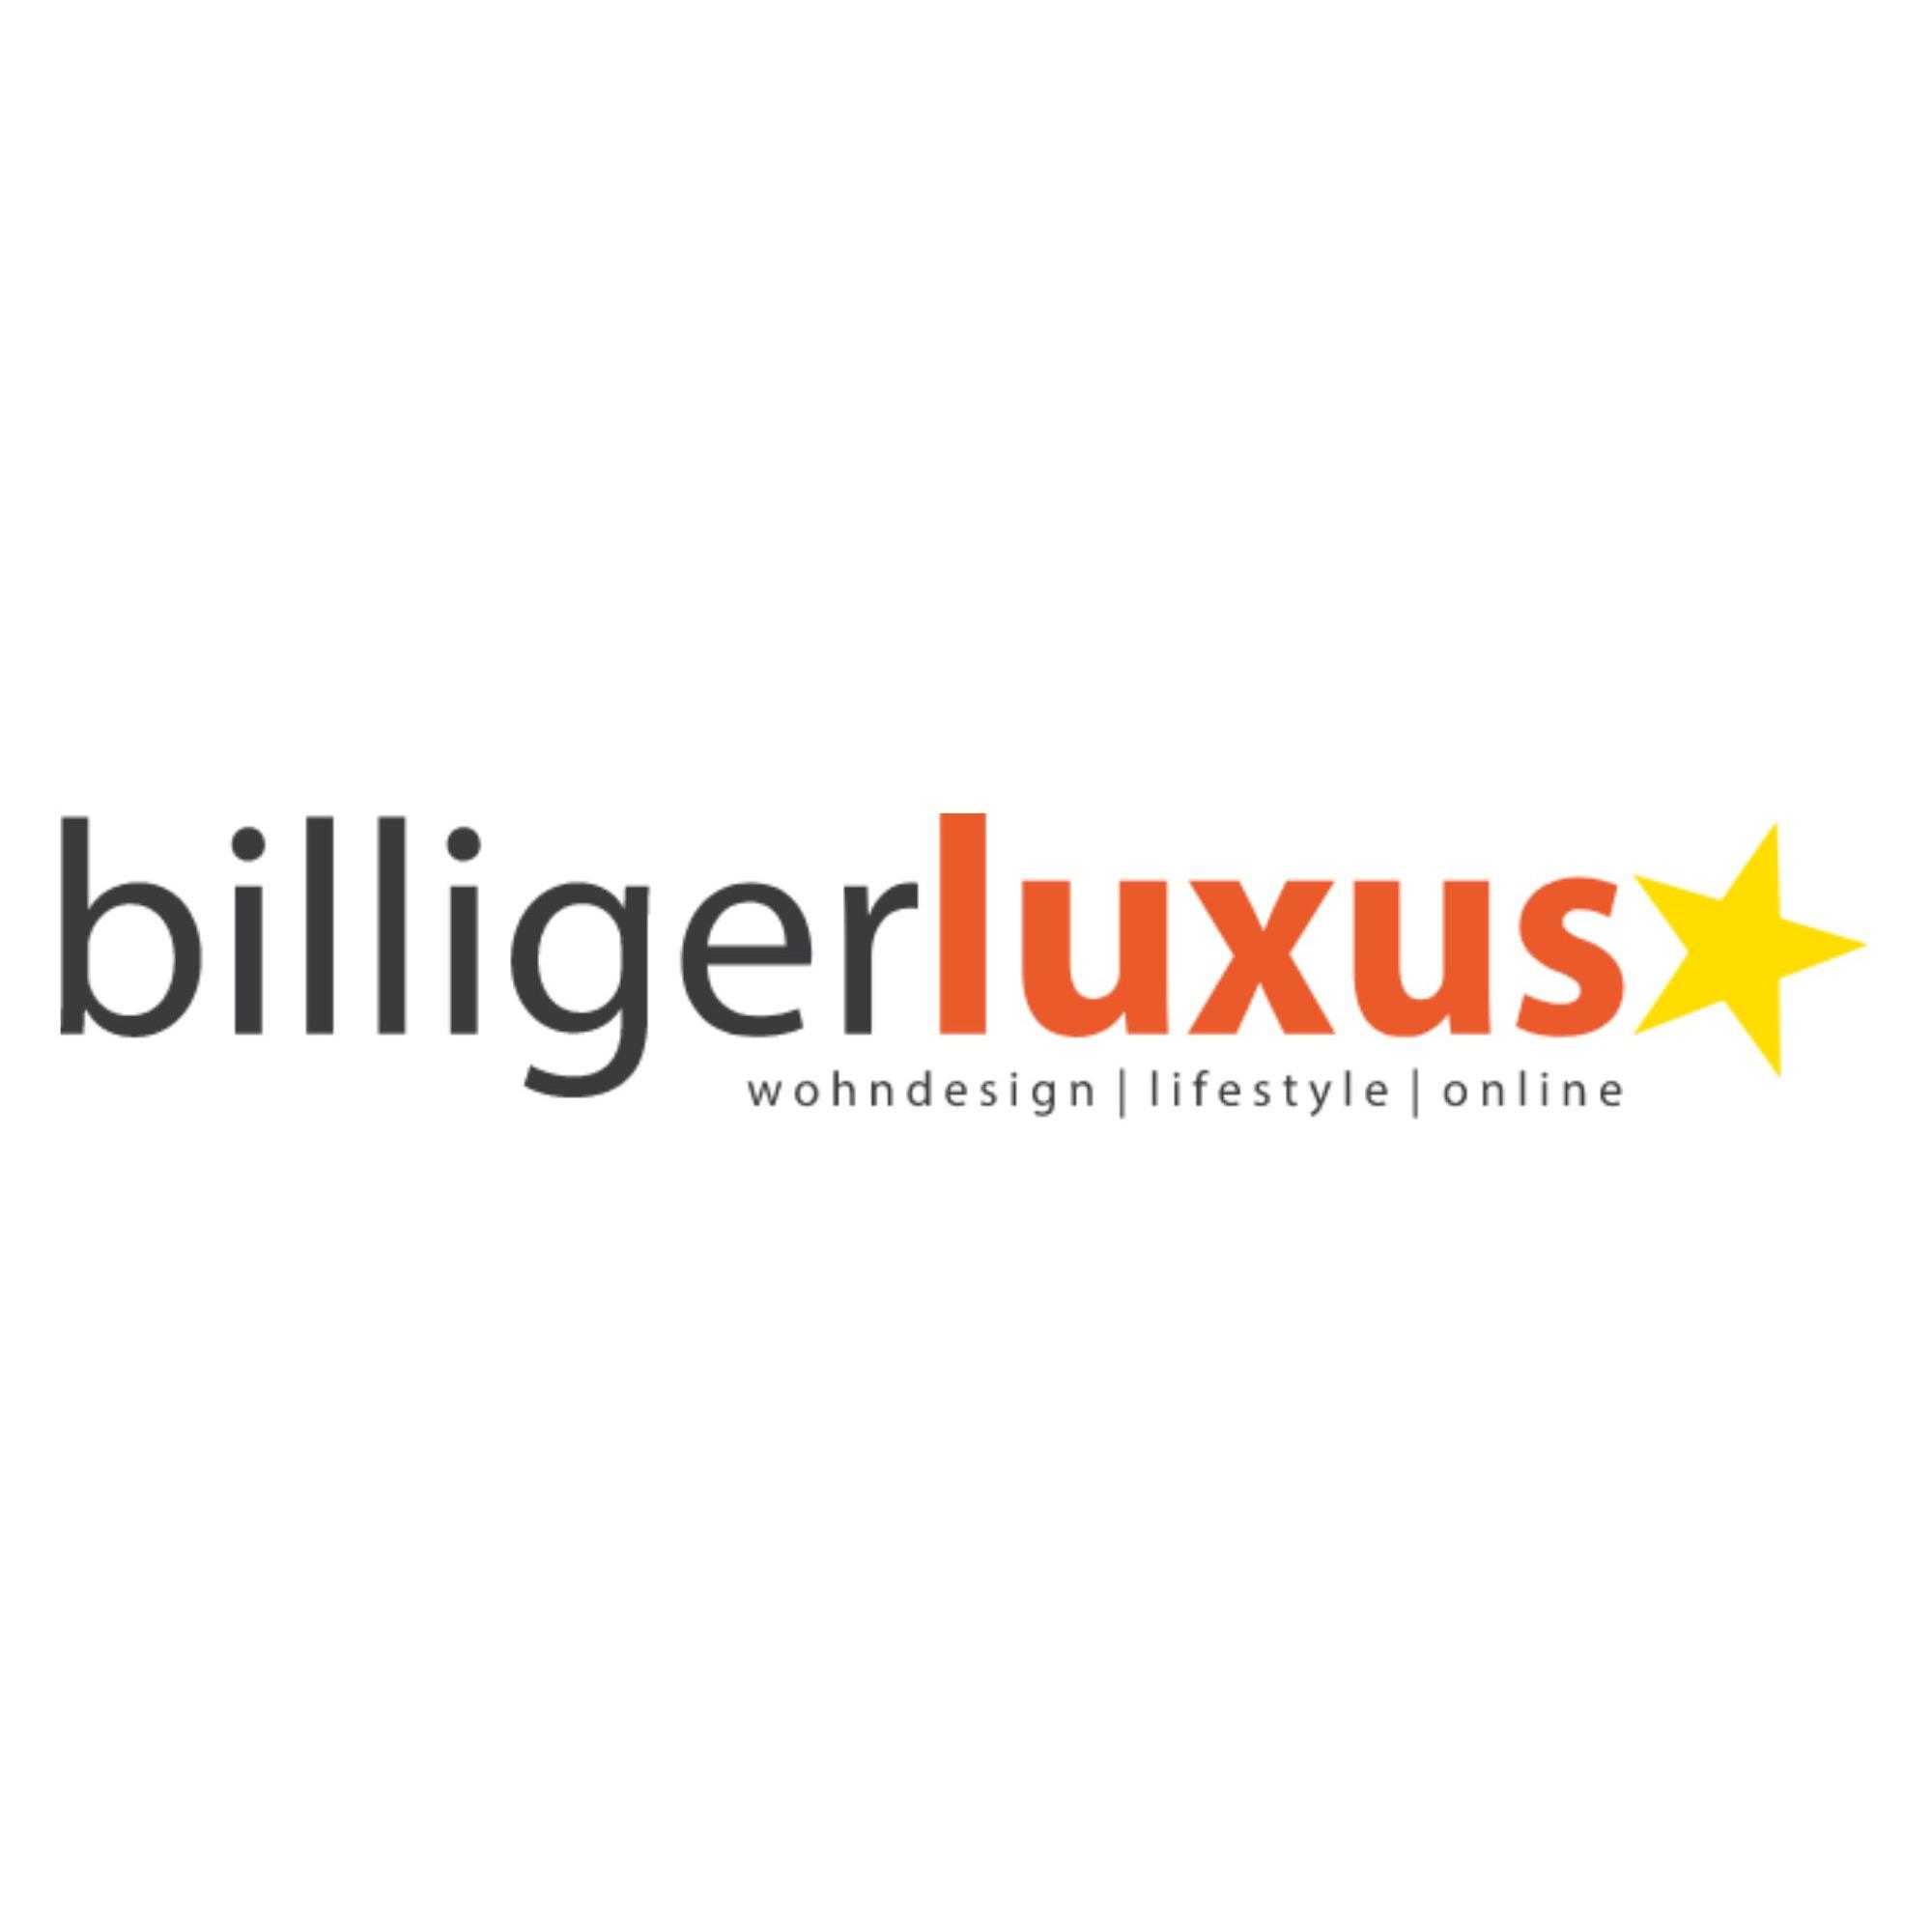 billigerluxus in Rheinberg - Logo